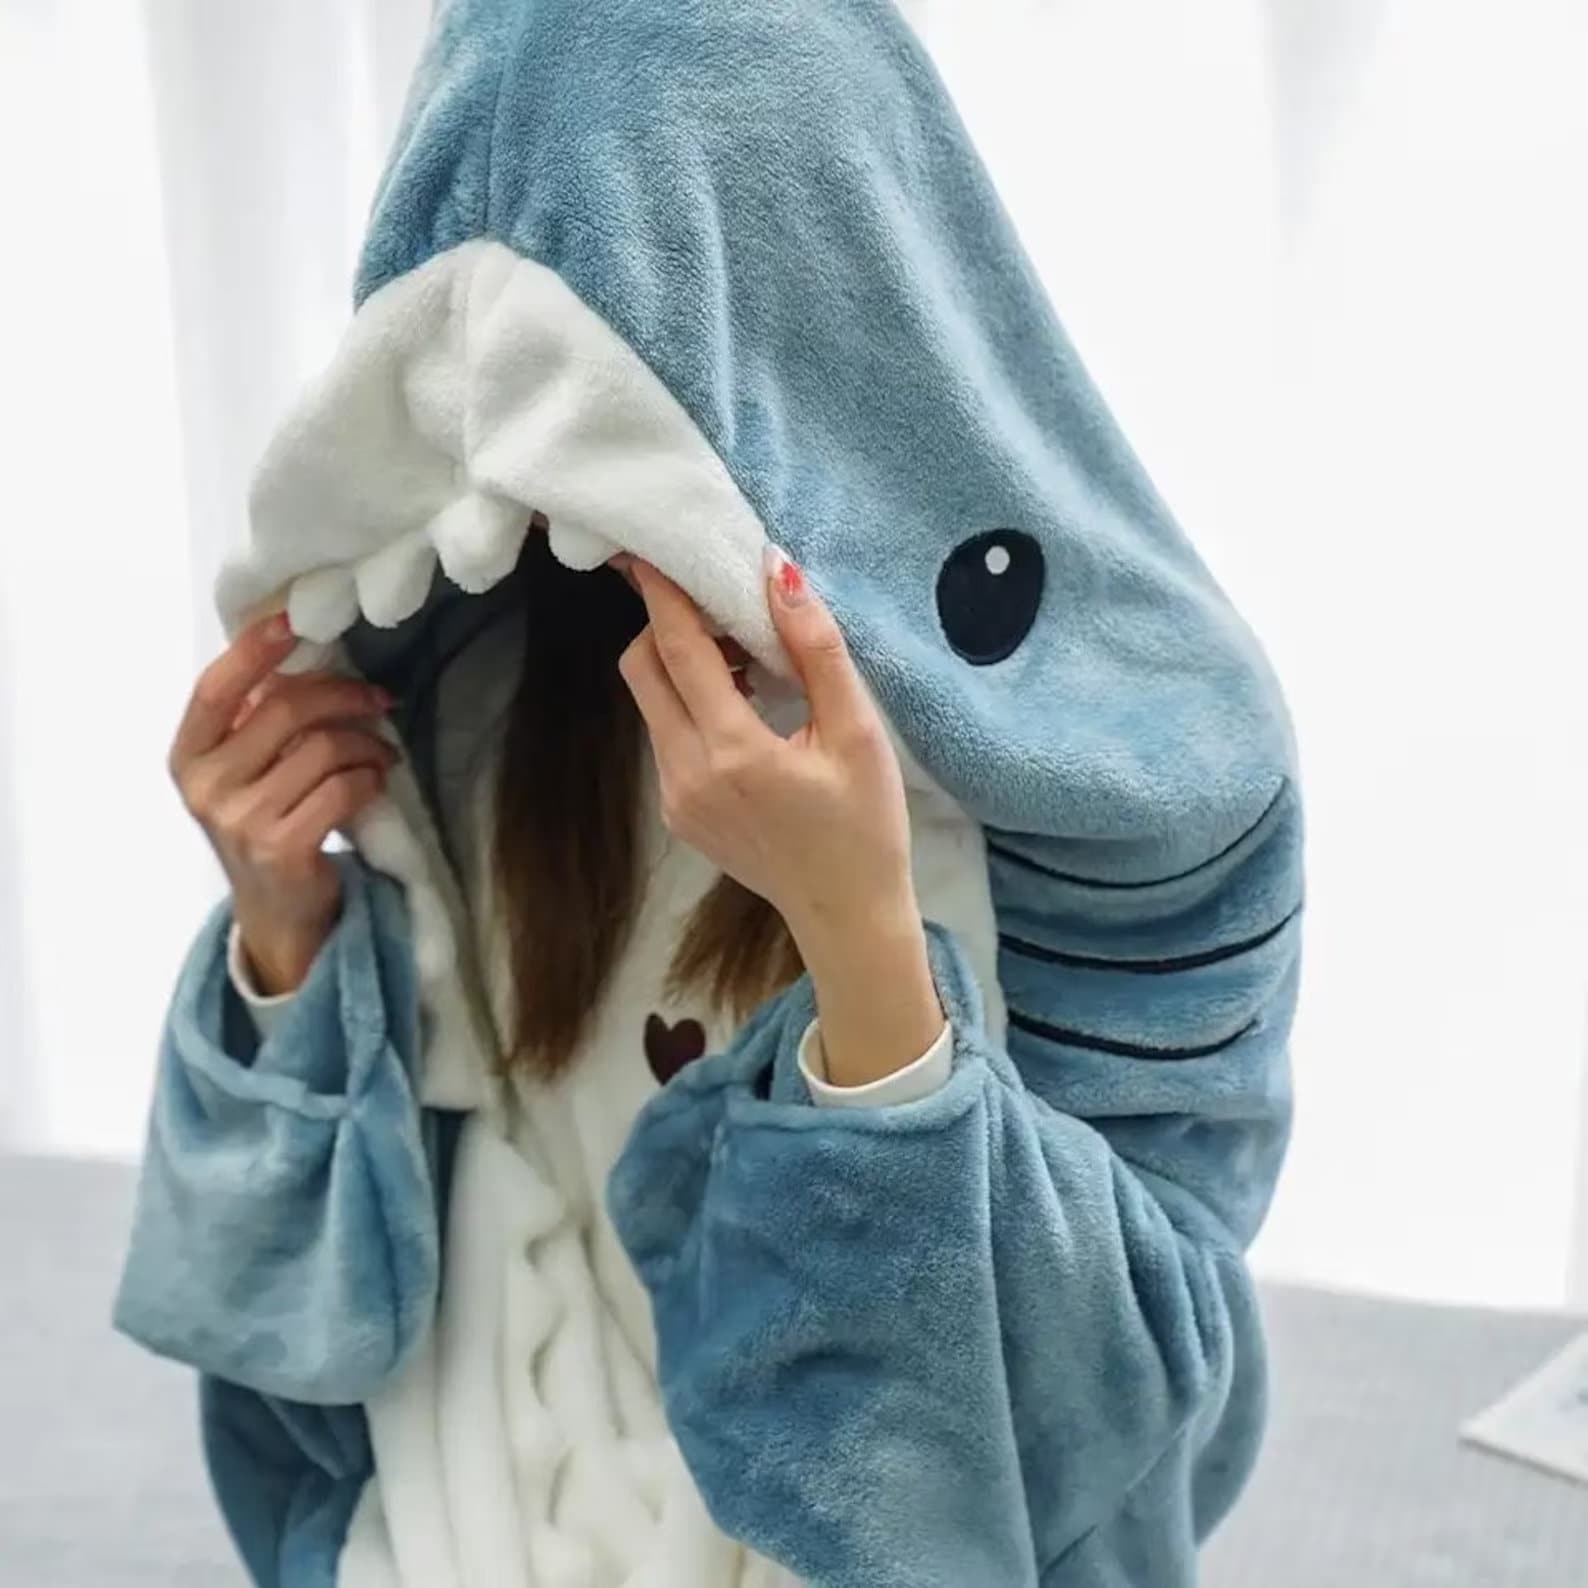 Disfraz tipo pijama tiburón para parejas 25,99 €